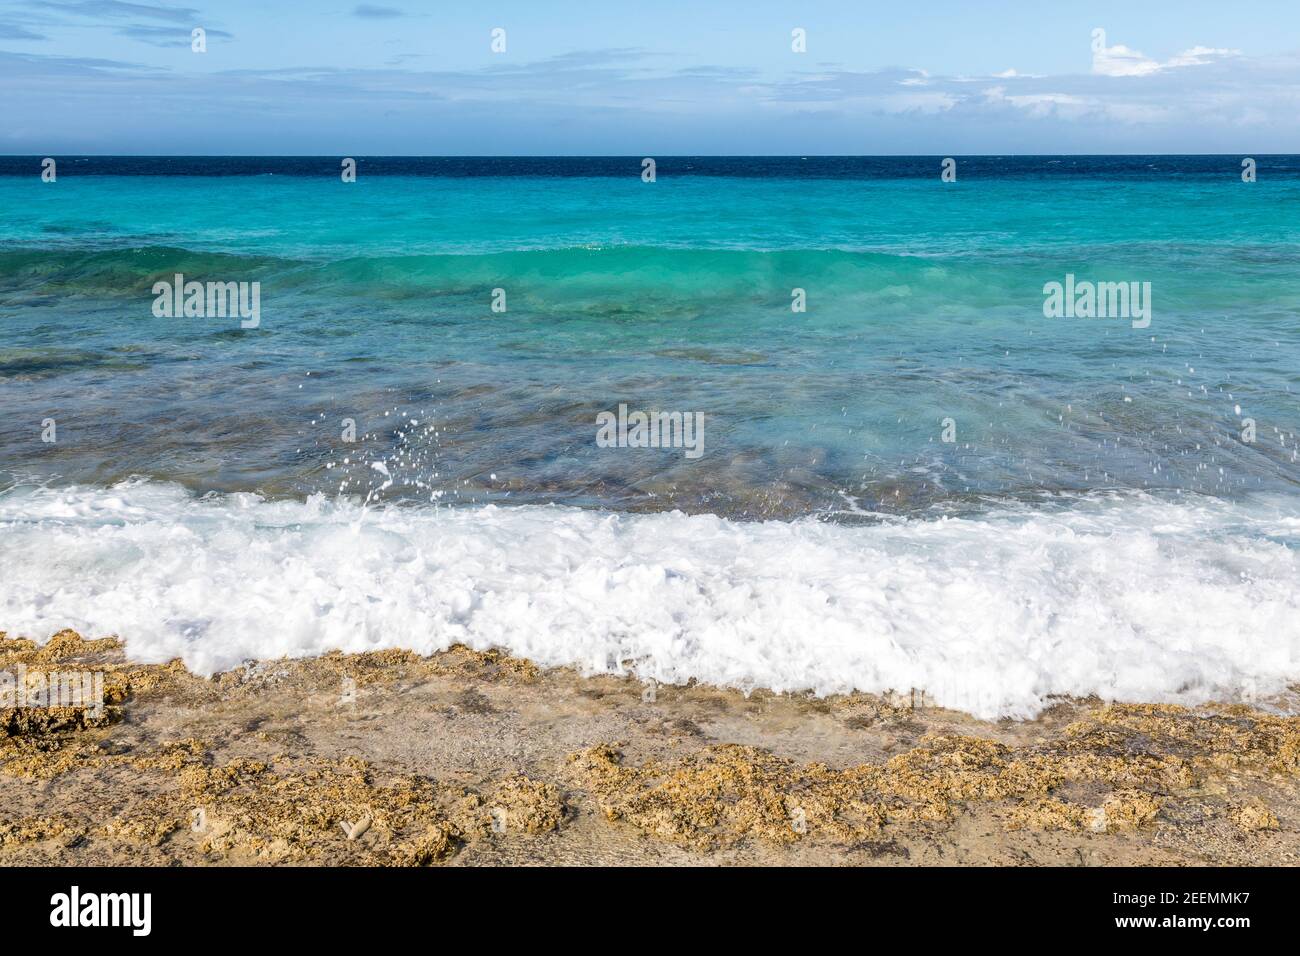 Kristallklares aquamarinfarbenes Meer mit Wellen, die in die Sonne brechen Korallenstrand bei den Sklavenhäusern auf der Karibikinsel Von Bonaire Stockfoto